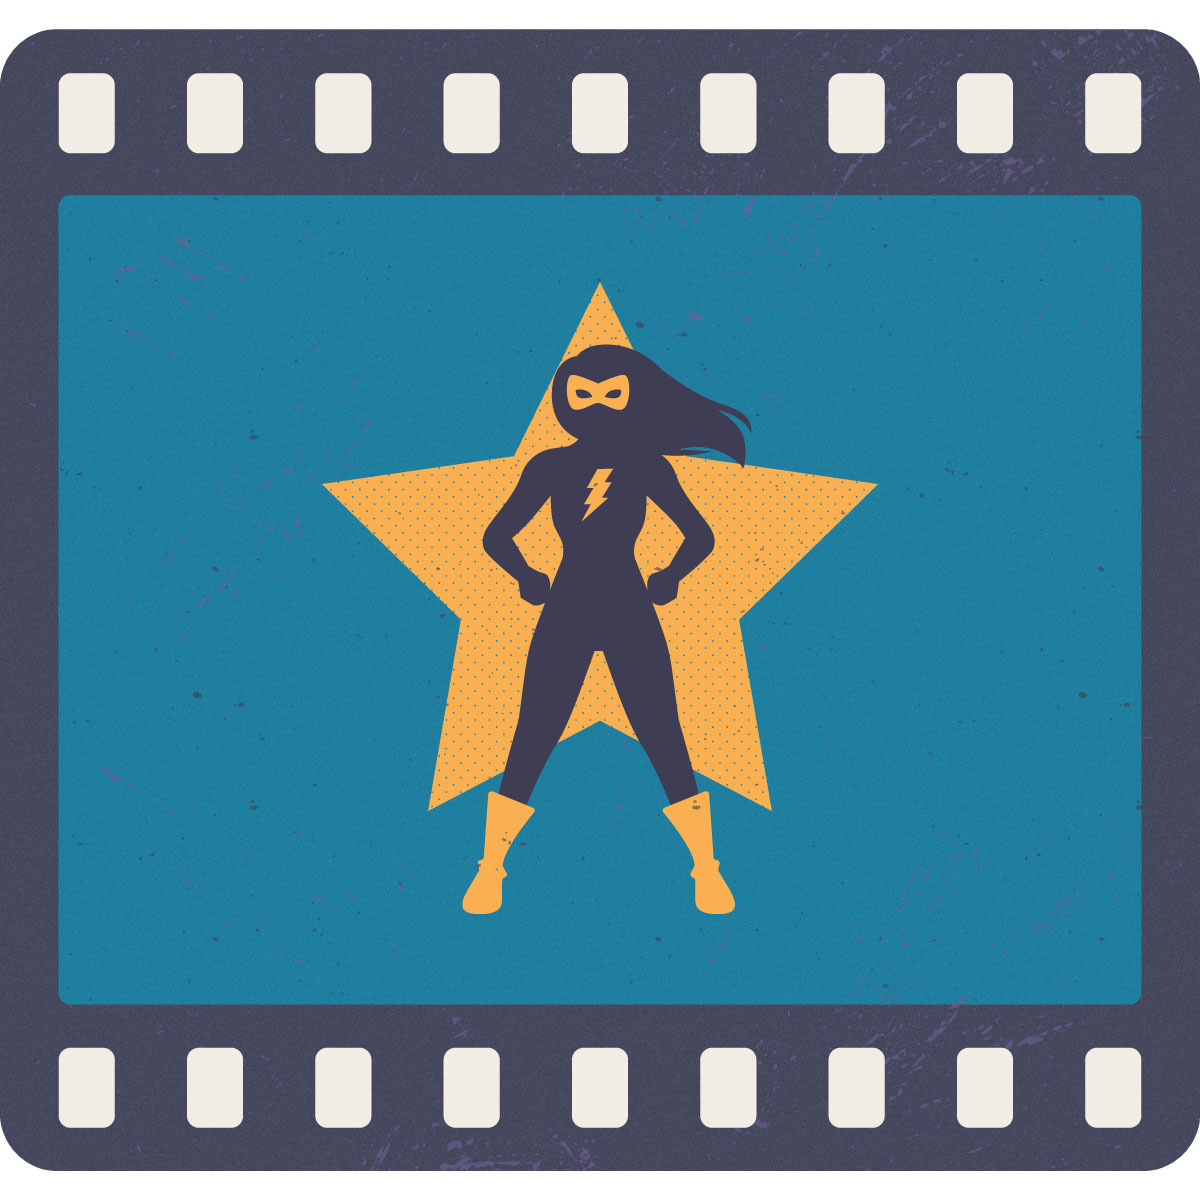 Silueta de mujer superheroína con una estrella amarilla de fondo, dentro de lo que parece ser una cinta de fotografía